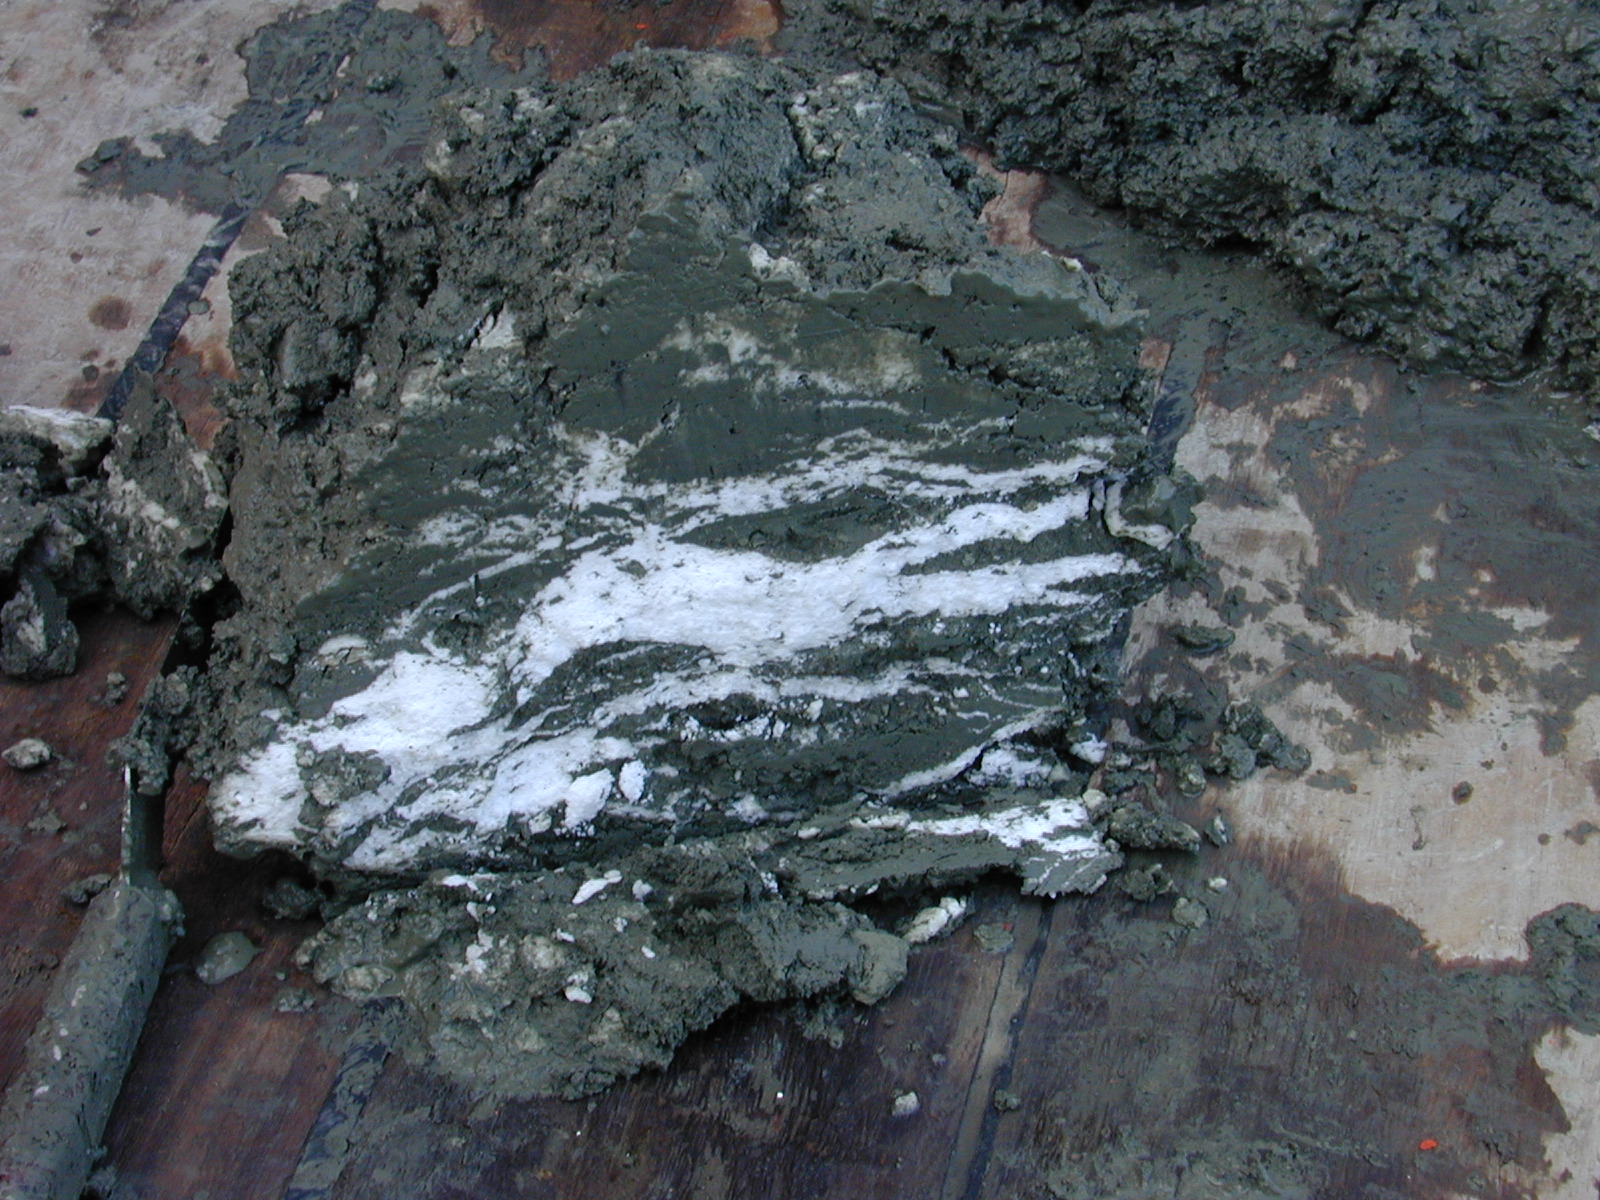 Hydrates de méthane (bandes blanches) dans des sédiments marins. © Wusel007, Wikimedia Commons, CC by-sa&nbsp;3.0